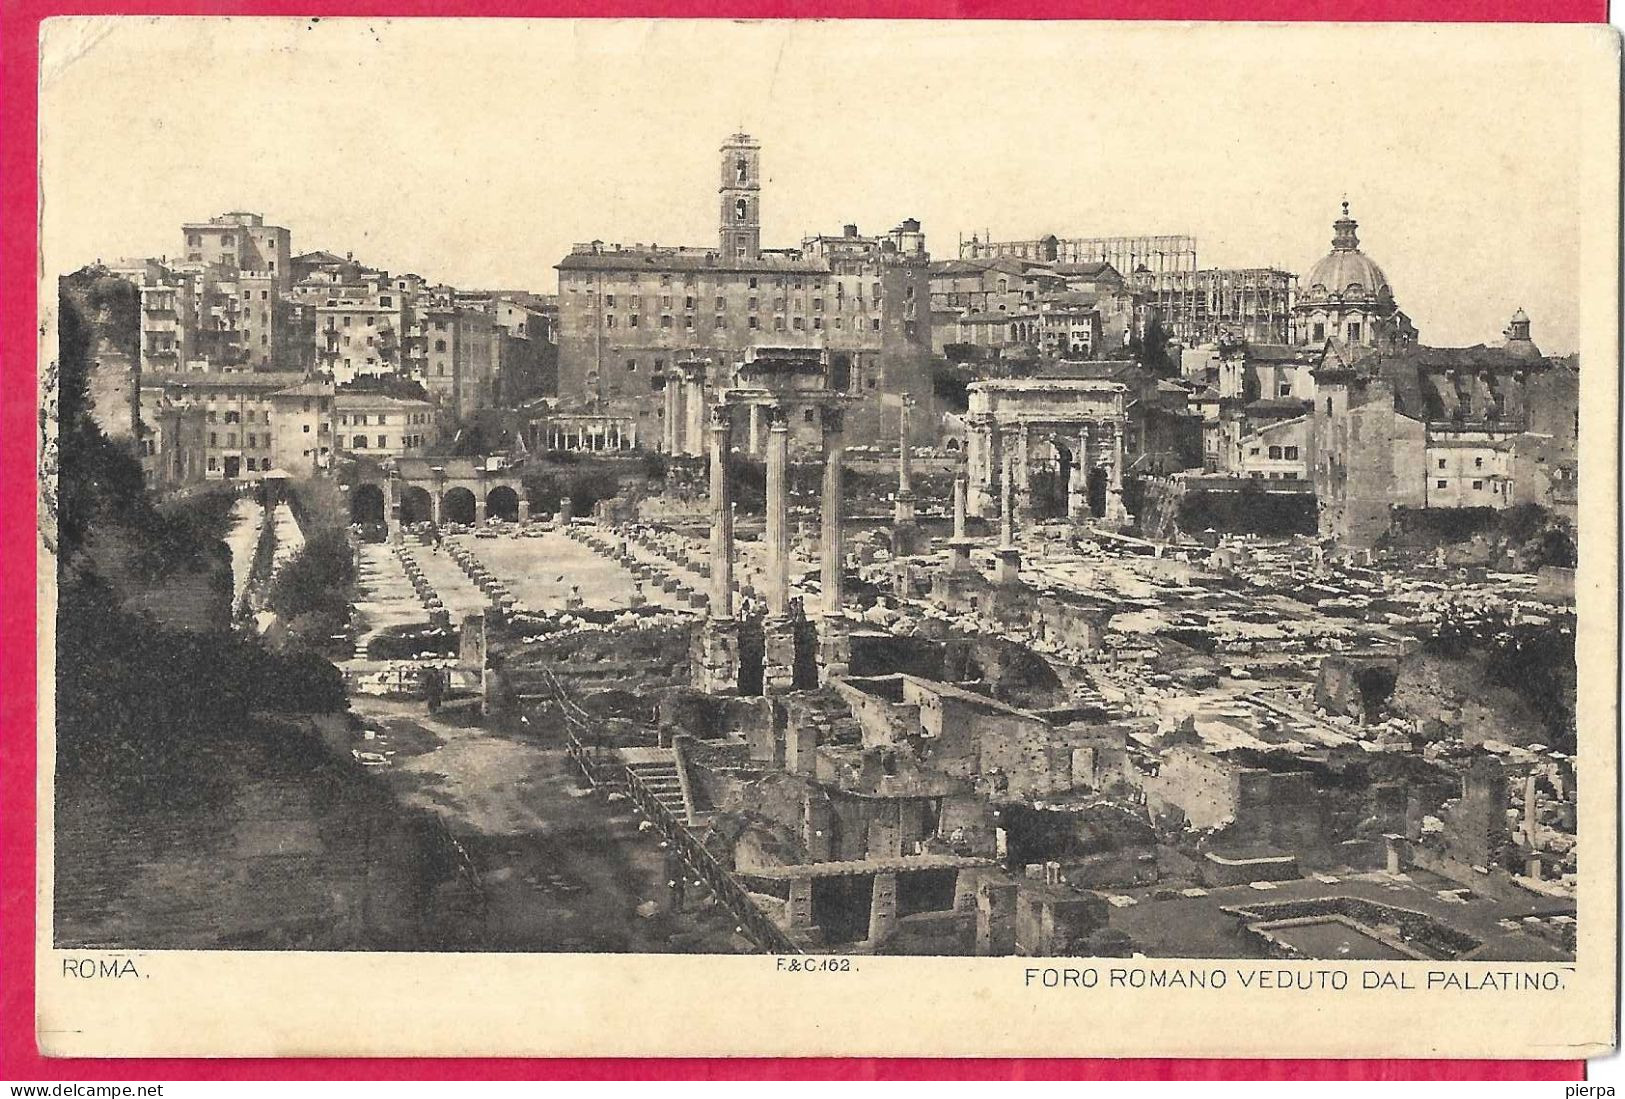 ROMA - FORO ROMANO - FORMATO PICCOLO - VIAGGIATA 1895 PER LA FRANCIA - Andere Monumente & Gebäude